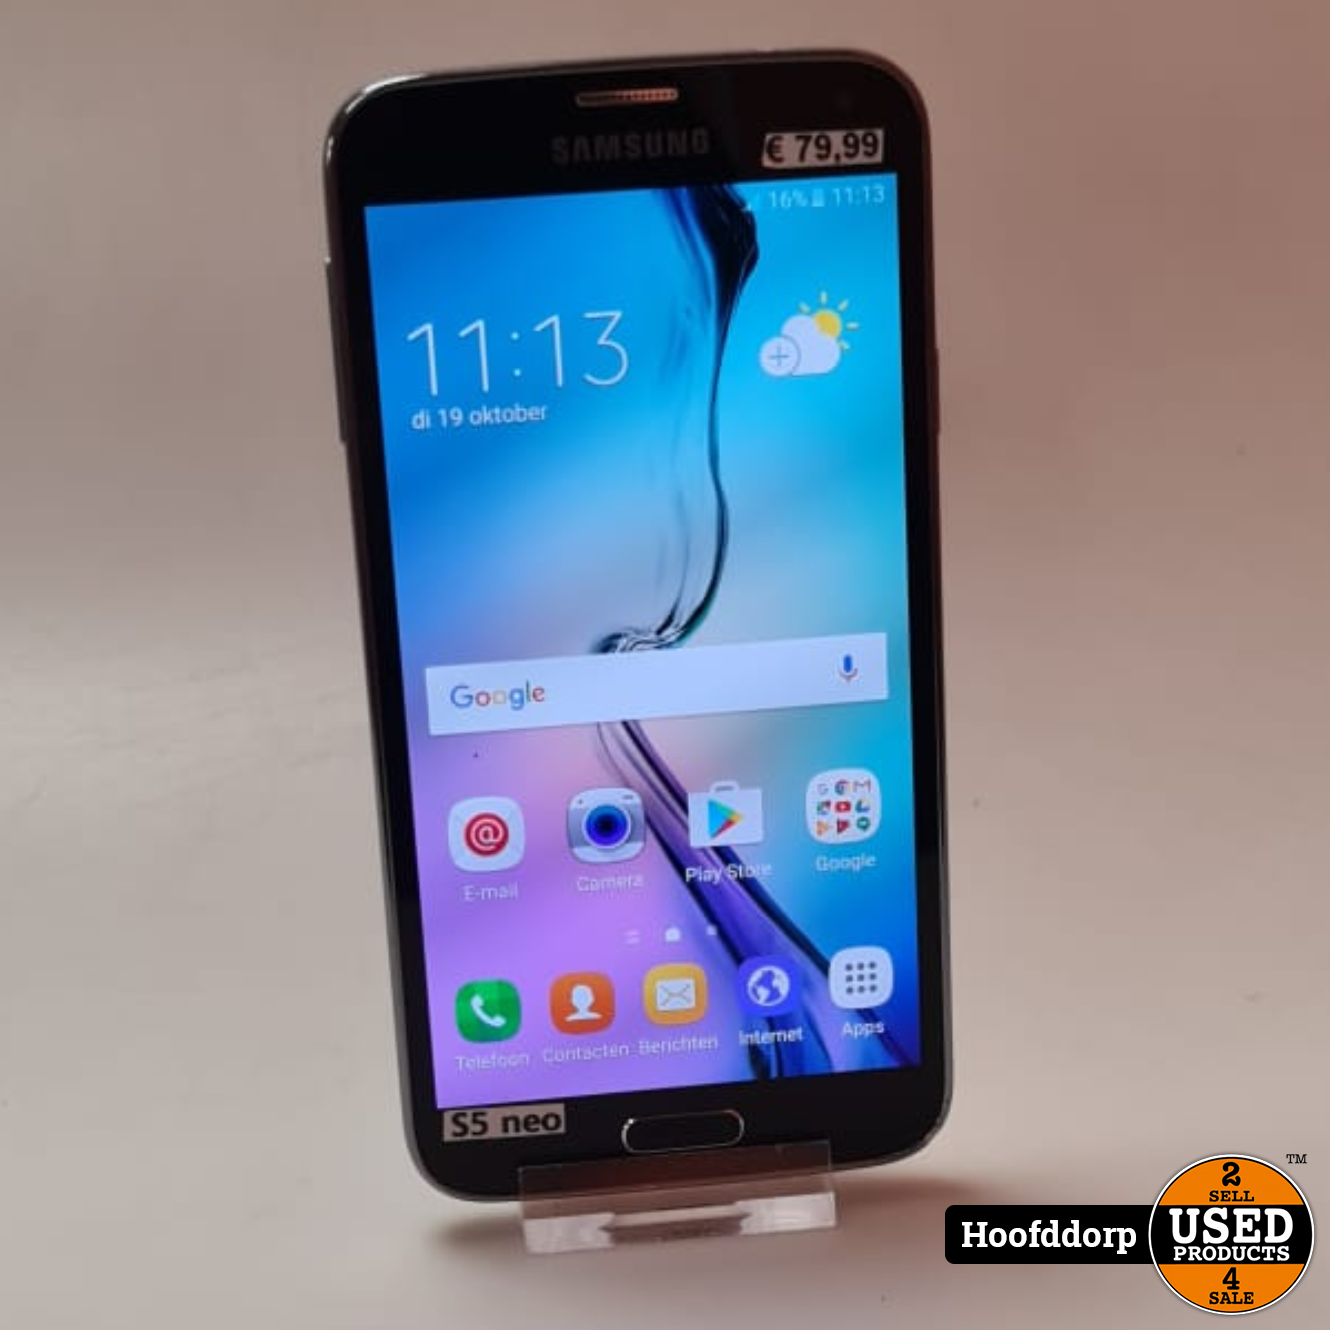 vonnis mannelijk Azië Samsung Galaxy S5 neo - Used Products Hoofddorp